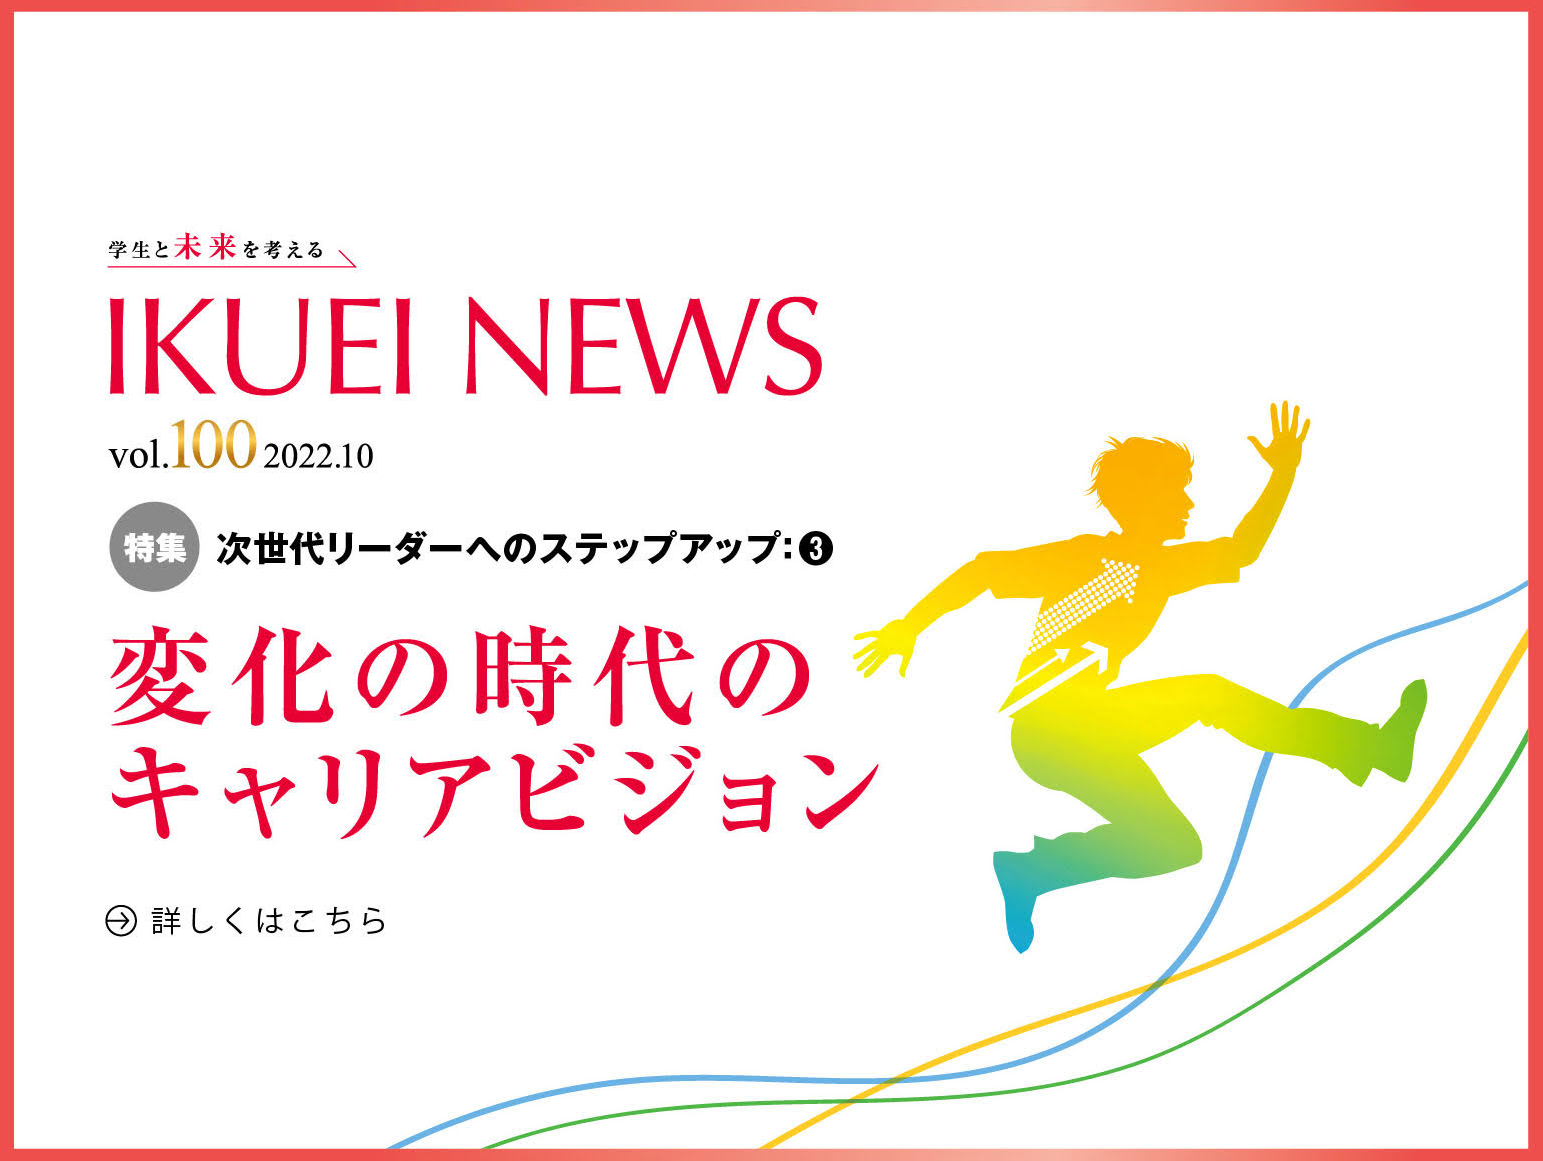 【雑誌】電通育英会「IKUEI NEWS 」にて、代表安藤のインタビュー記事が掲載されました